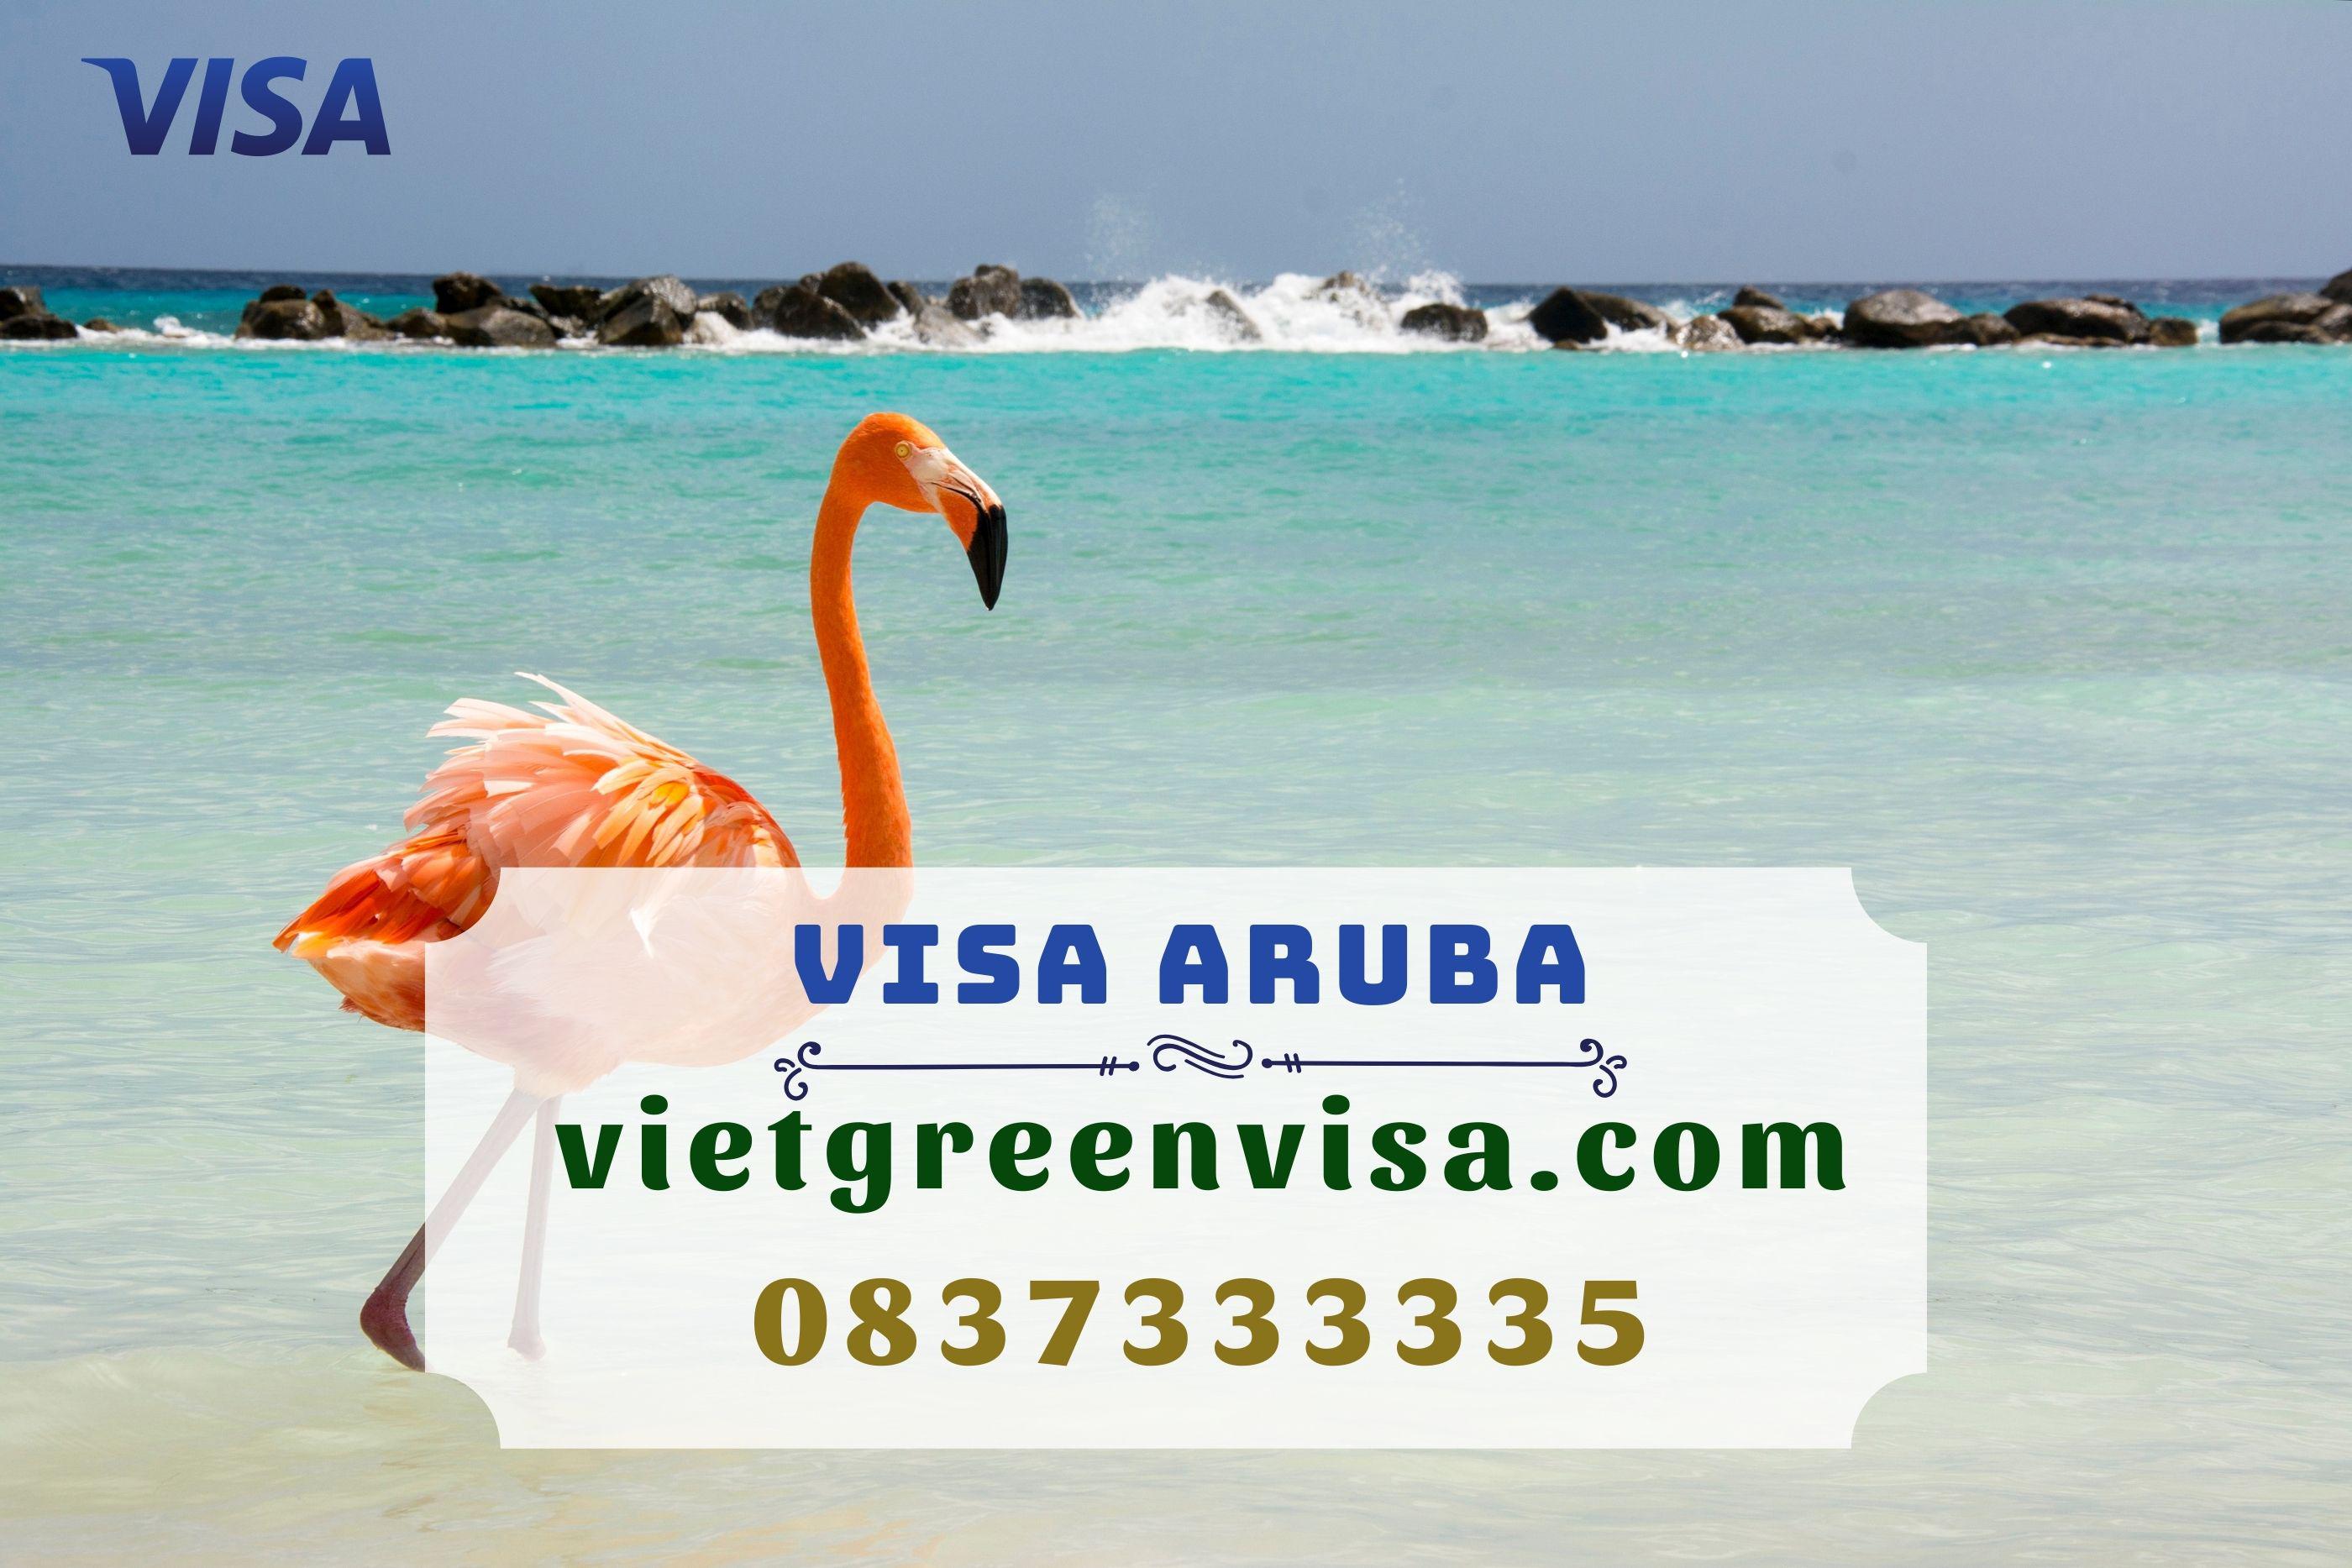 Hướng dẫn thủ tục xin visa Aruba chi tiết nhất